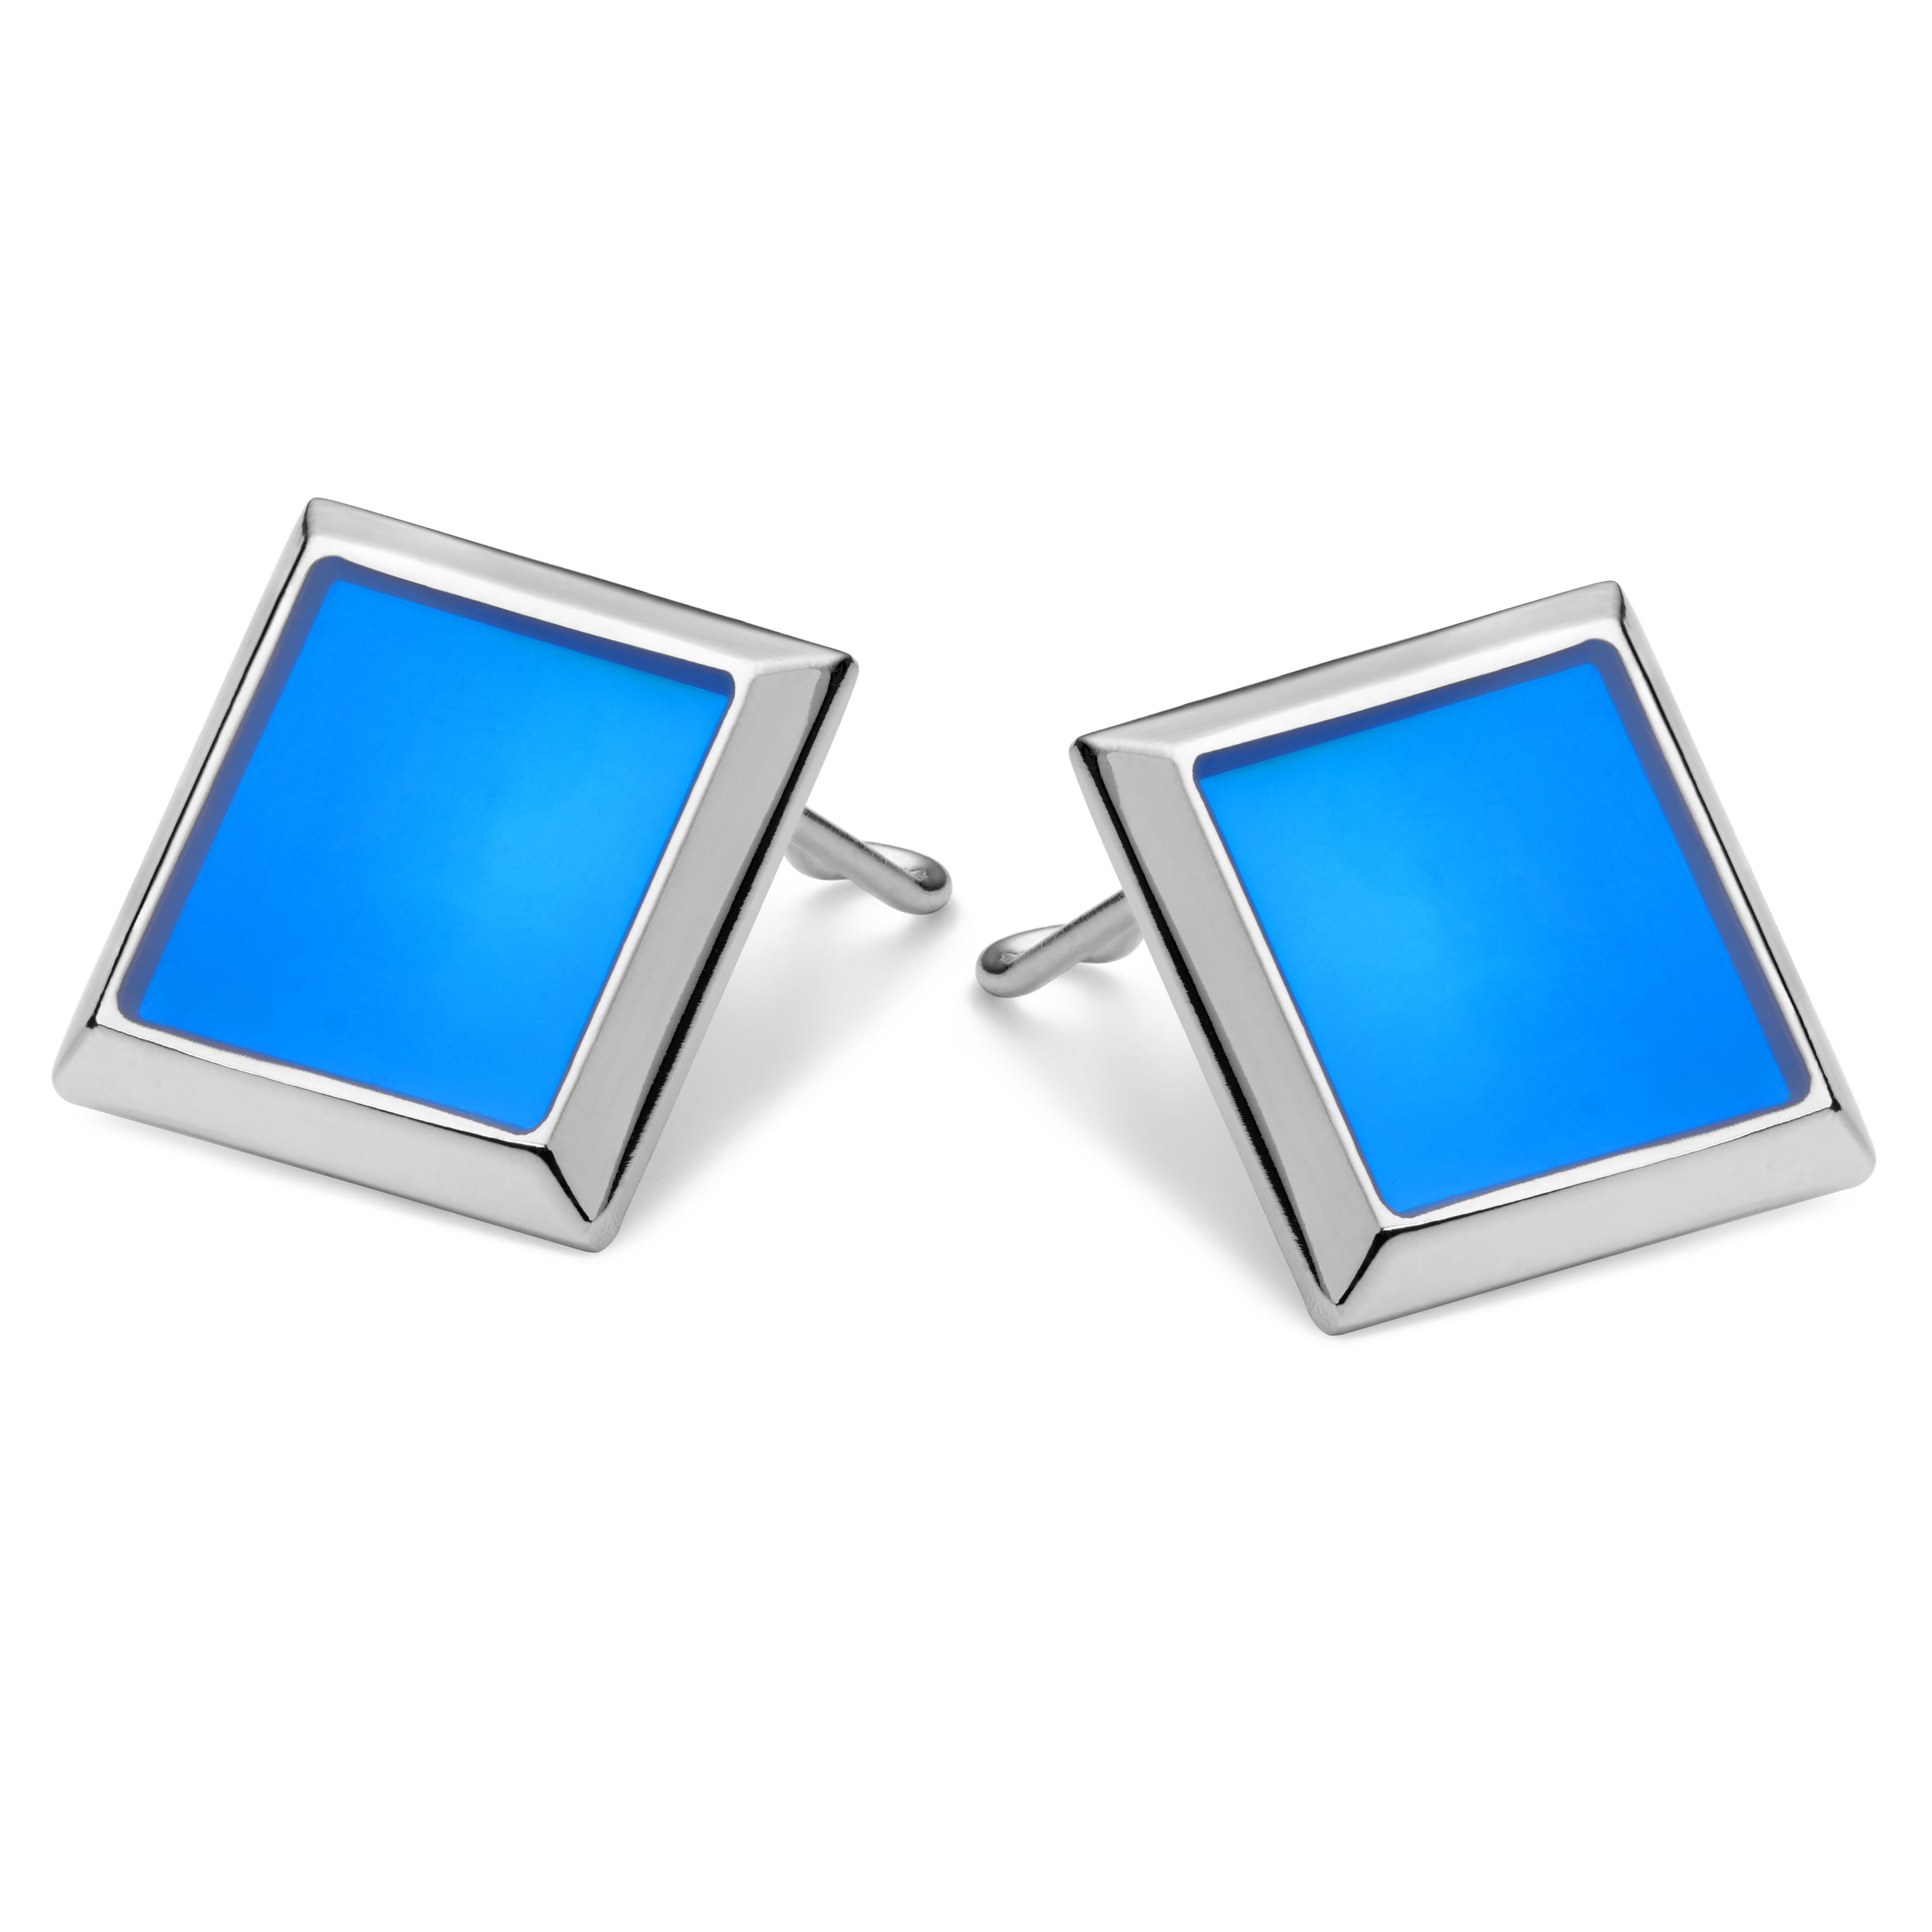 Square Silver-Tone & Neon Blue Copper Button Covers